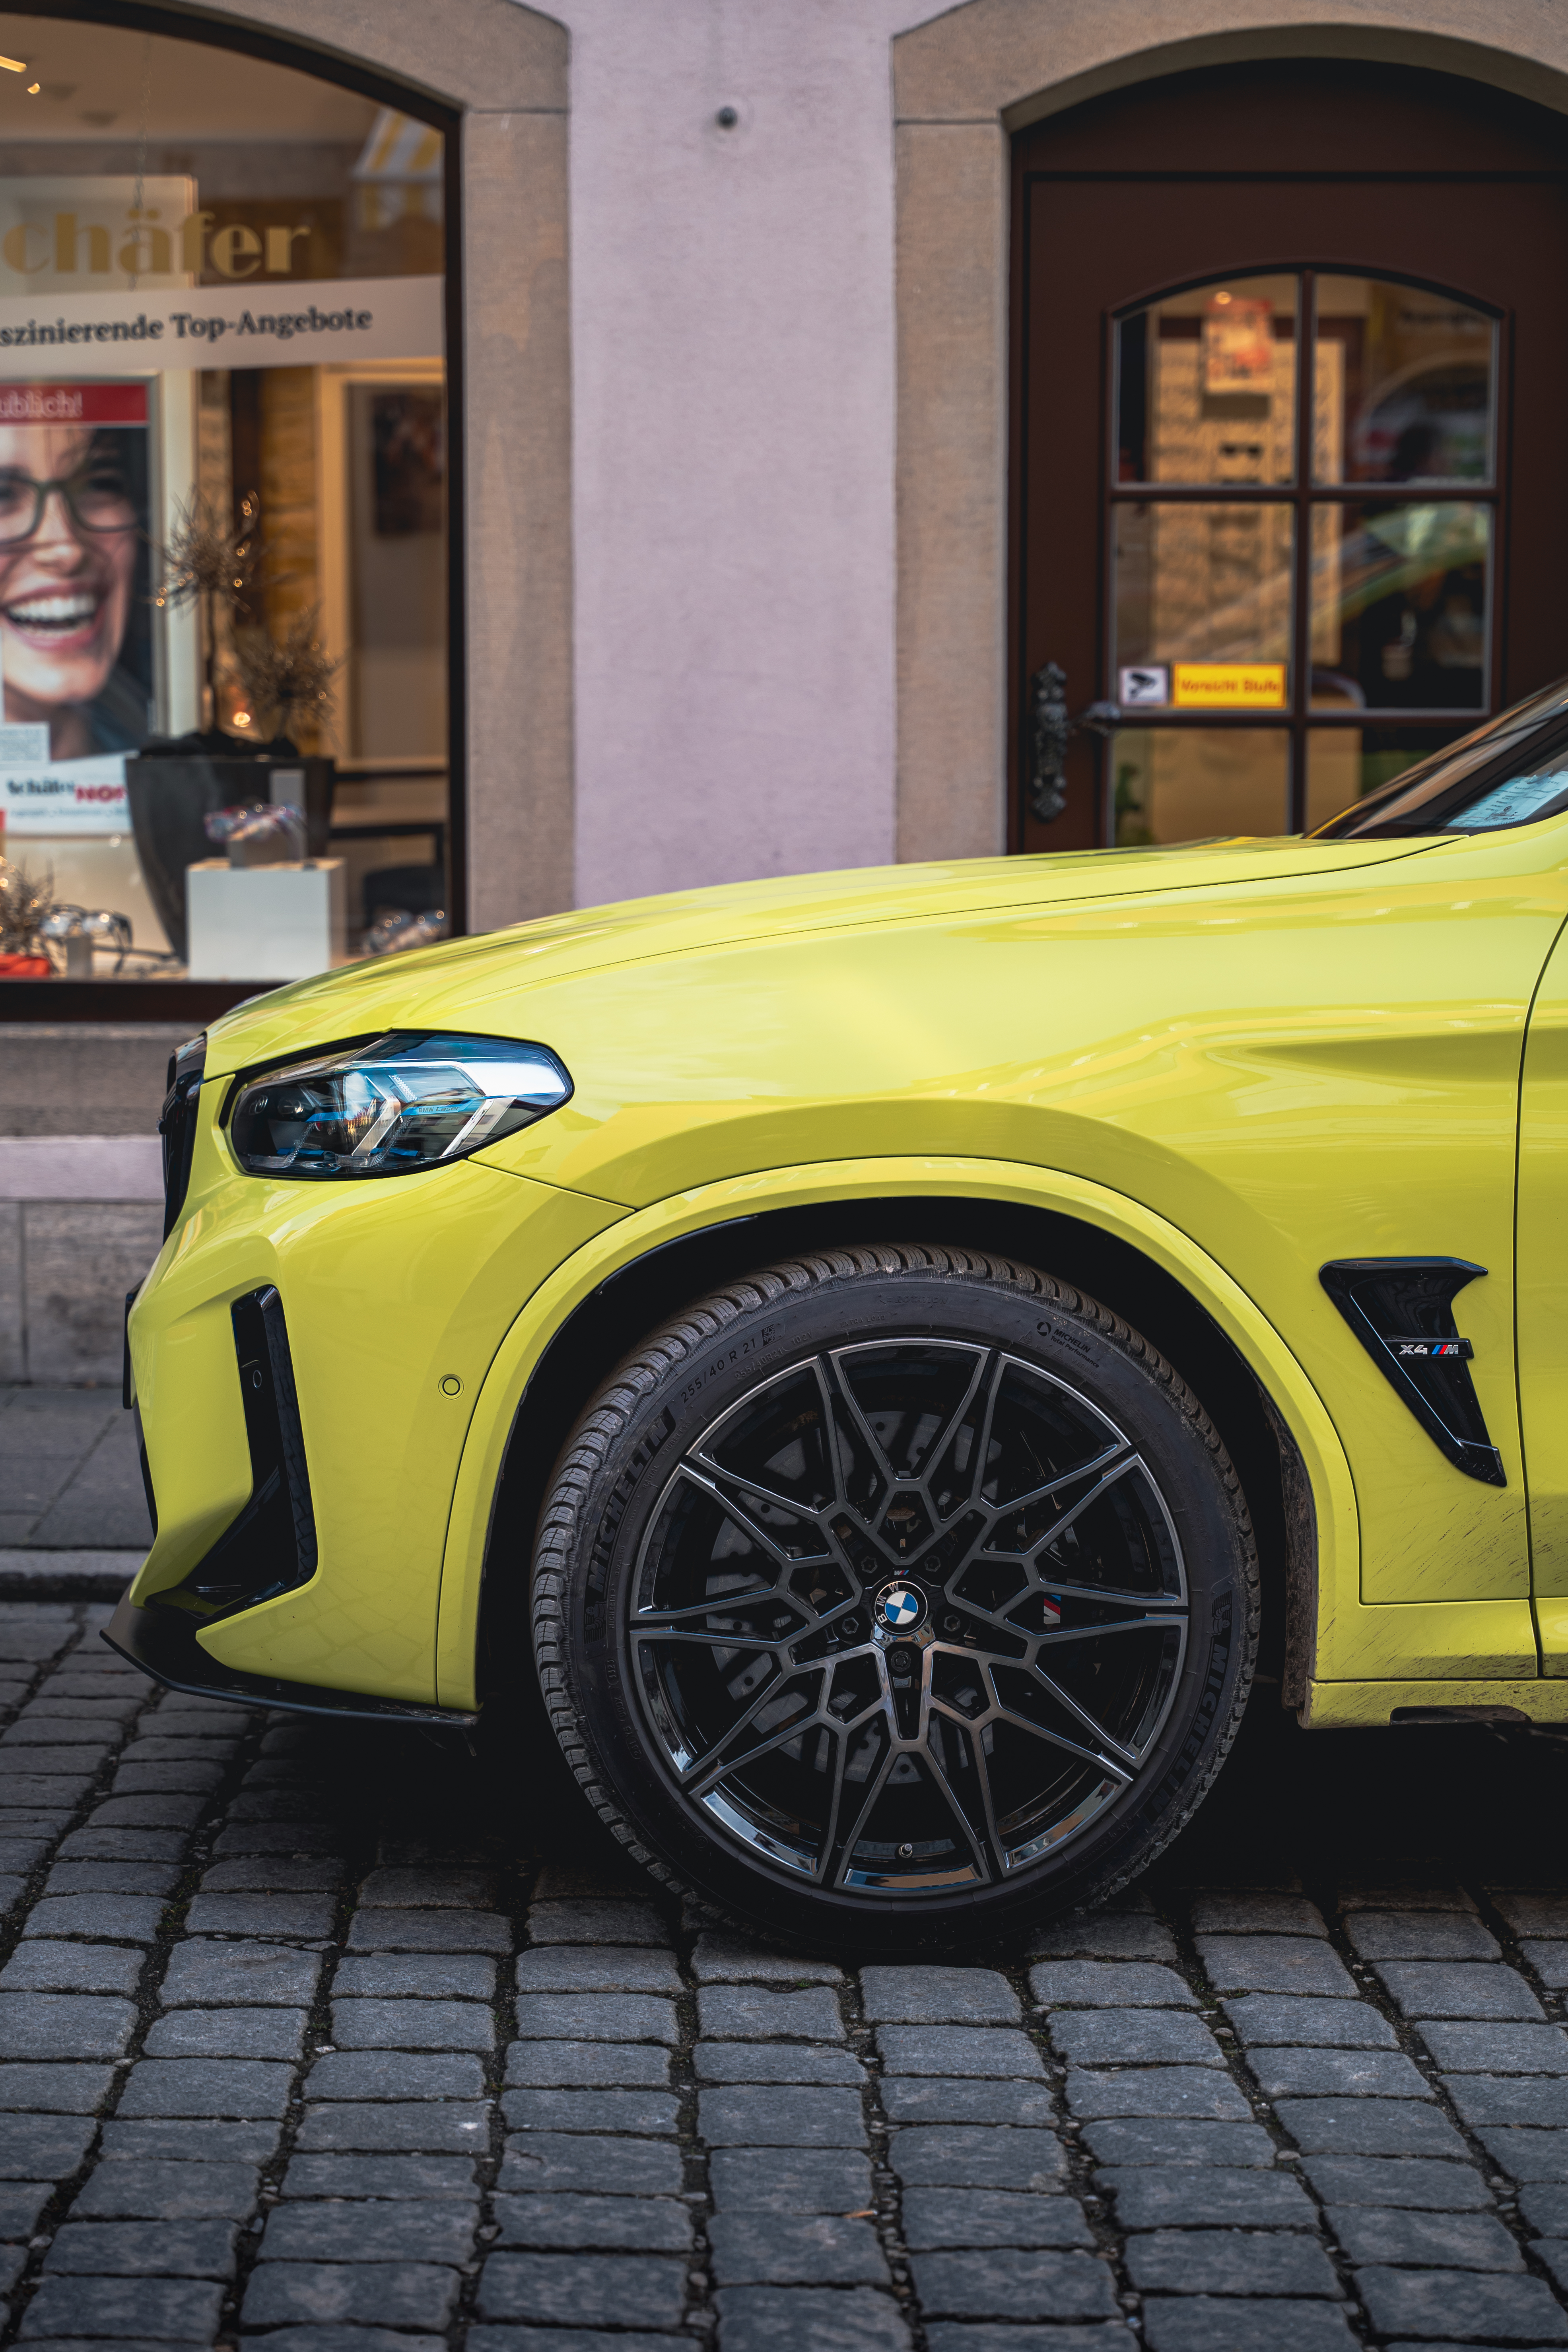 BMW BMW X4 Yellow Car Portrait Display 3943x5915